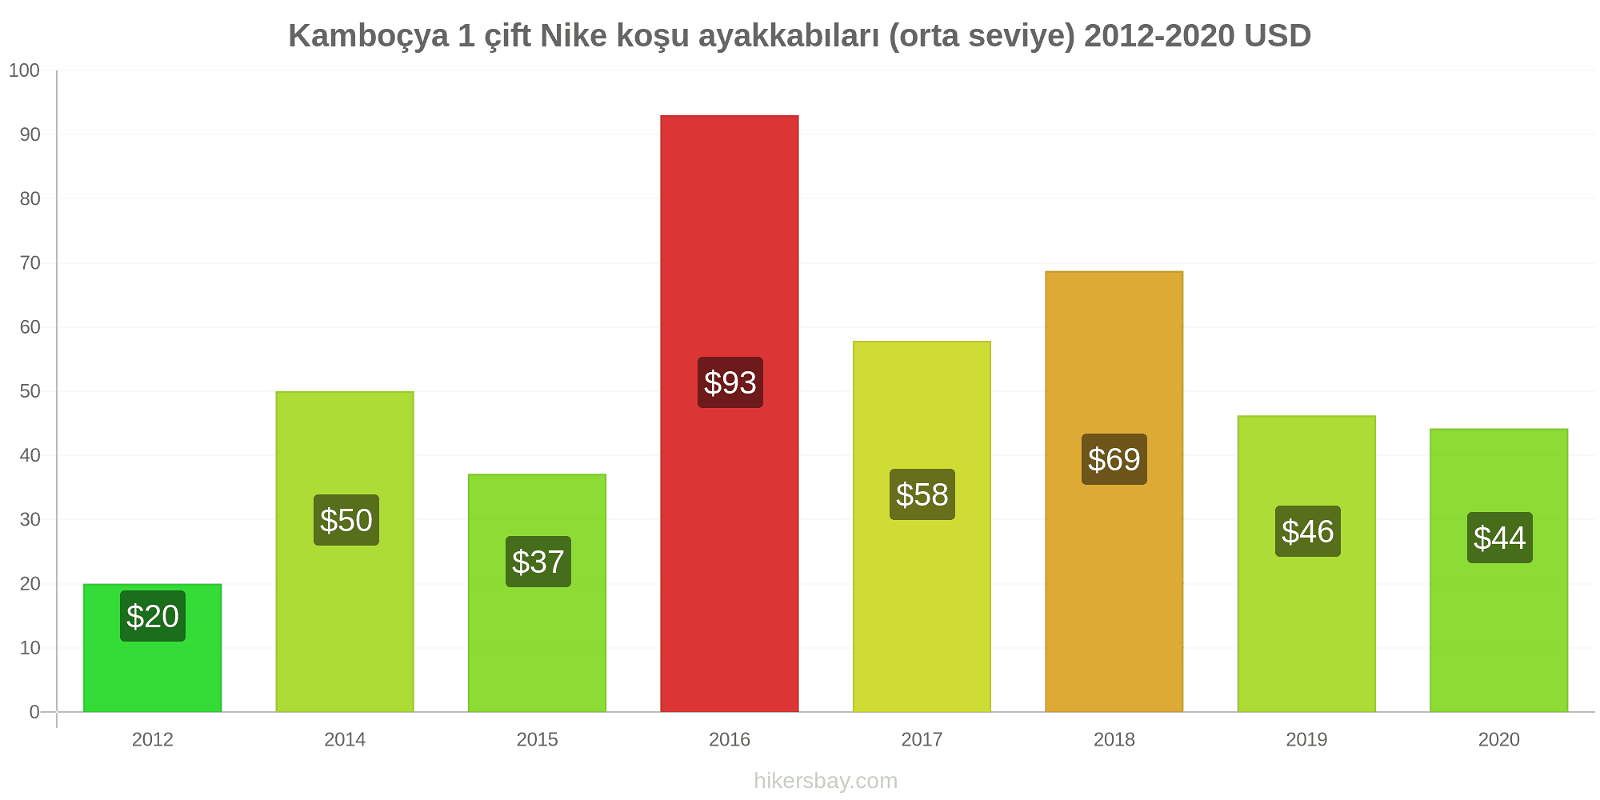 Kamboçya fiyat değişiklikleri 1 çift Nike koşu ayakkabıları (orta seviye) hikersbay.com